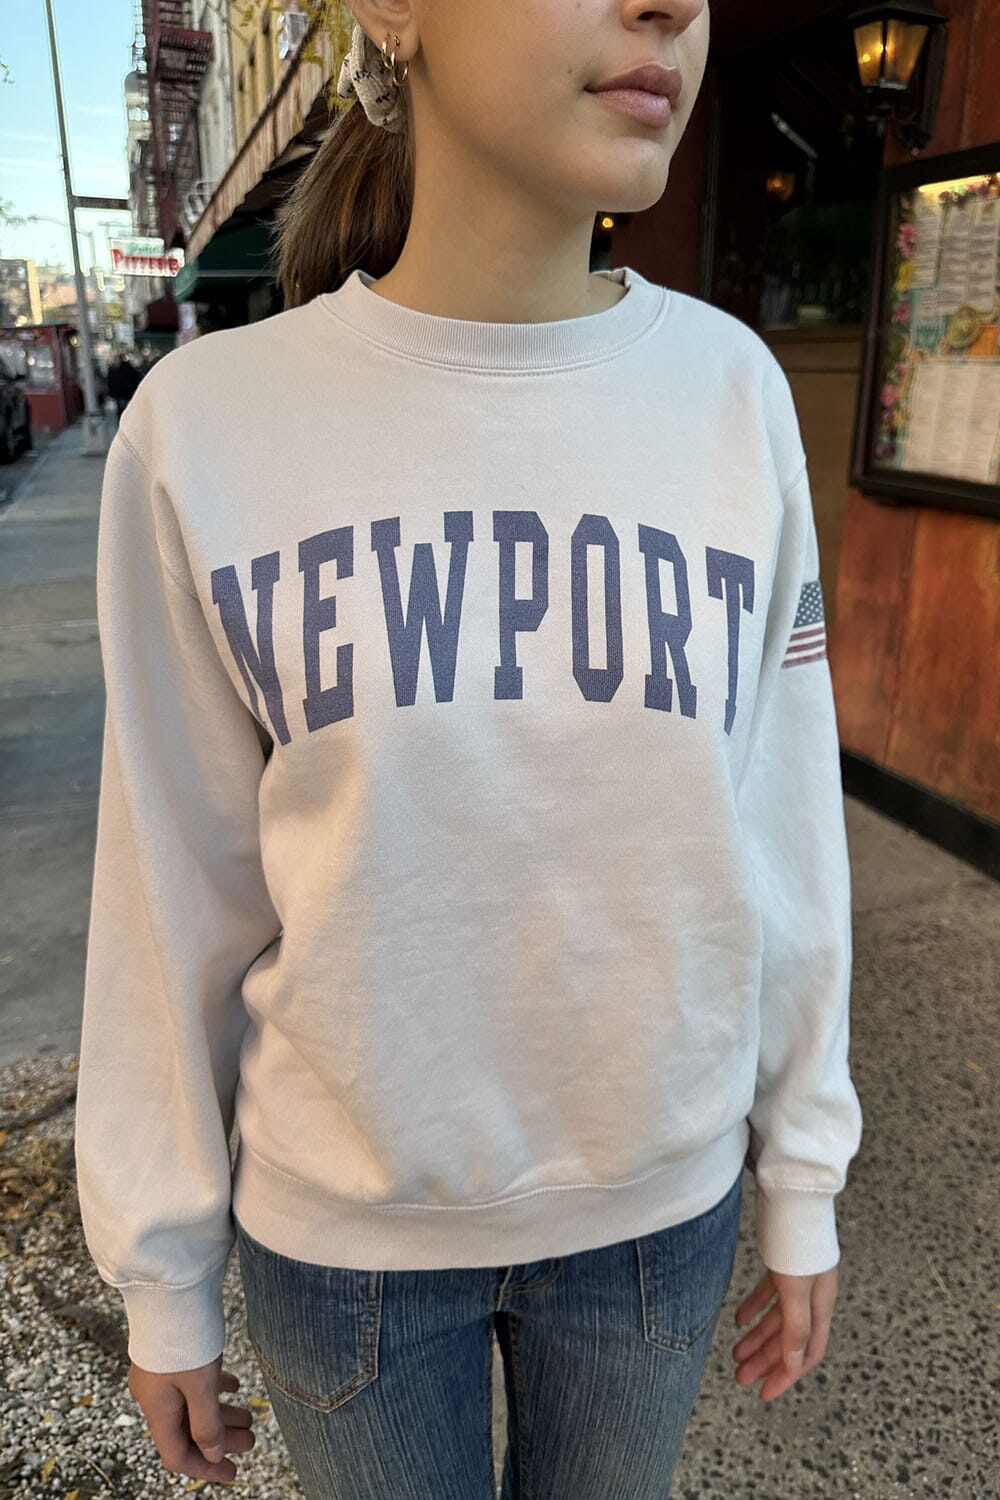 Newport Brandy Melville Sweatshirt – Erica